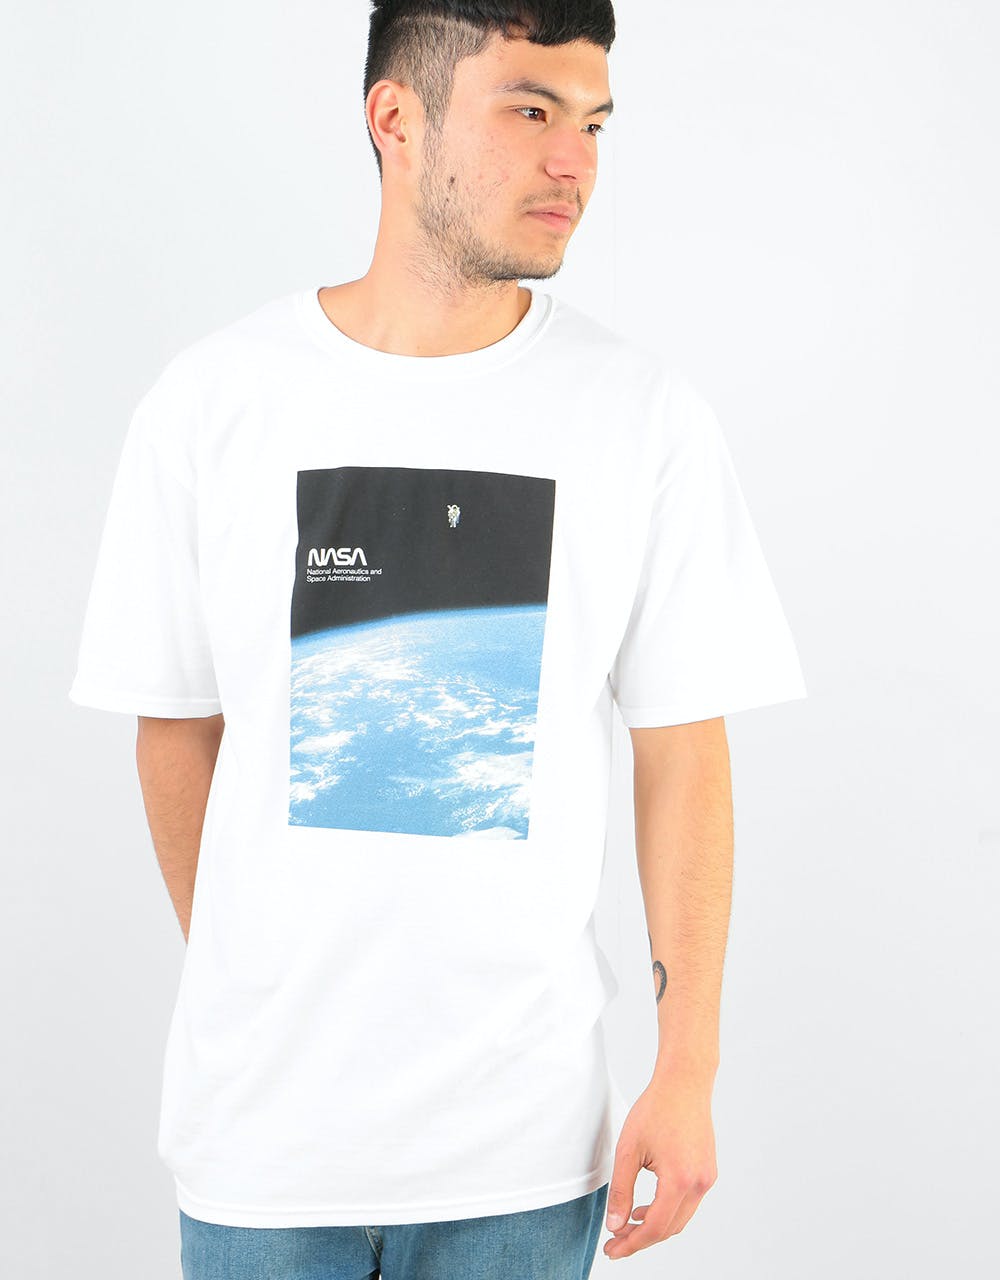 Habitat x NASA Solitude T-Shirt - White